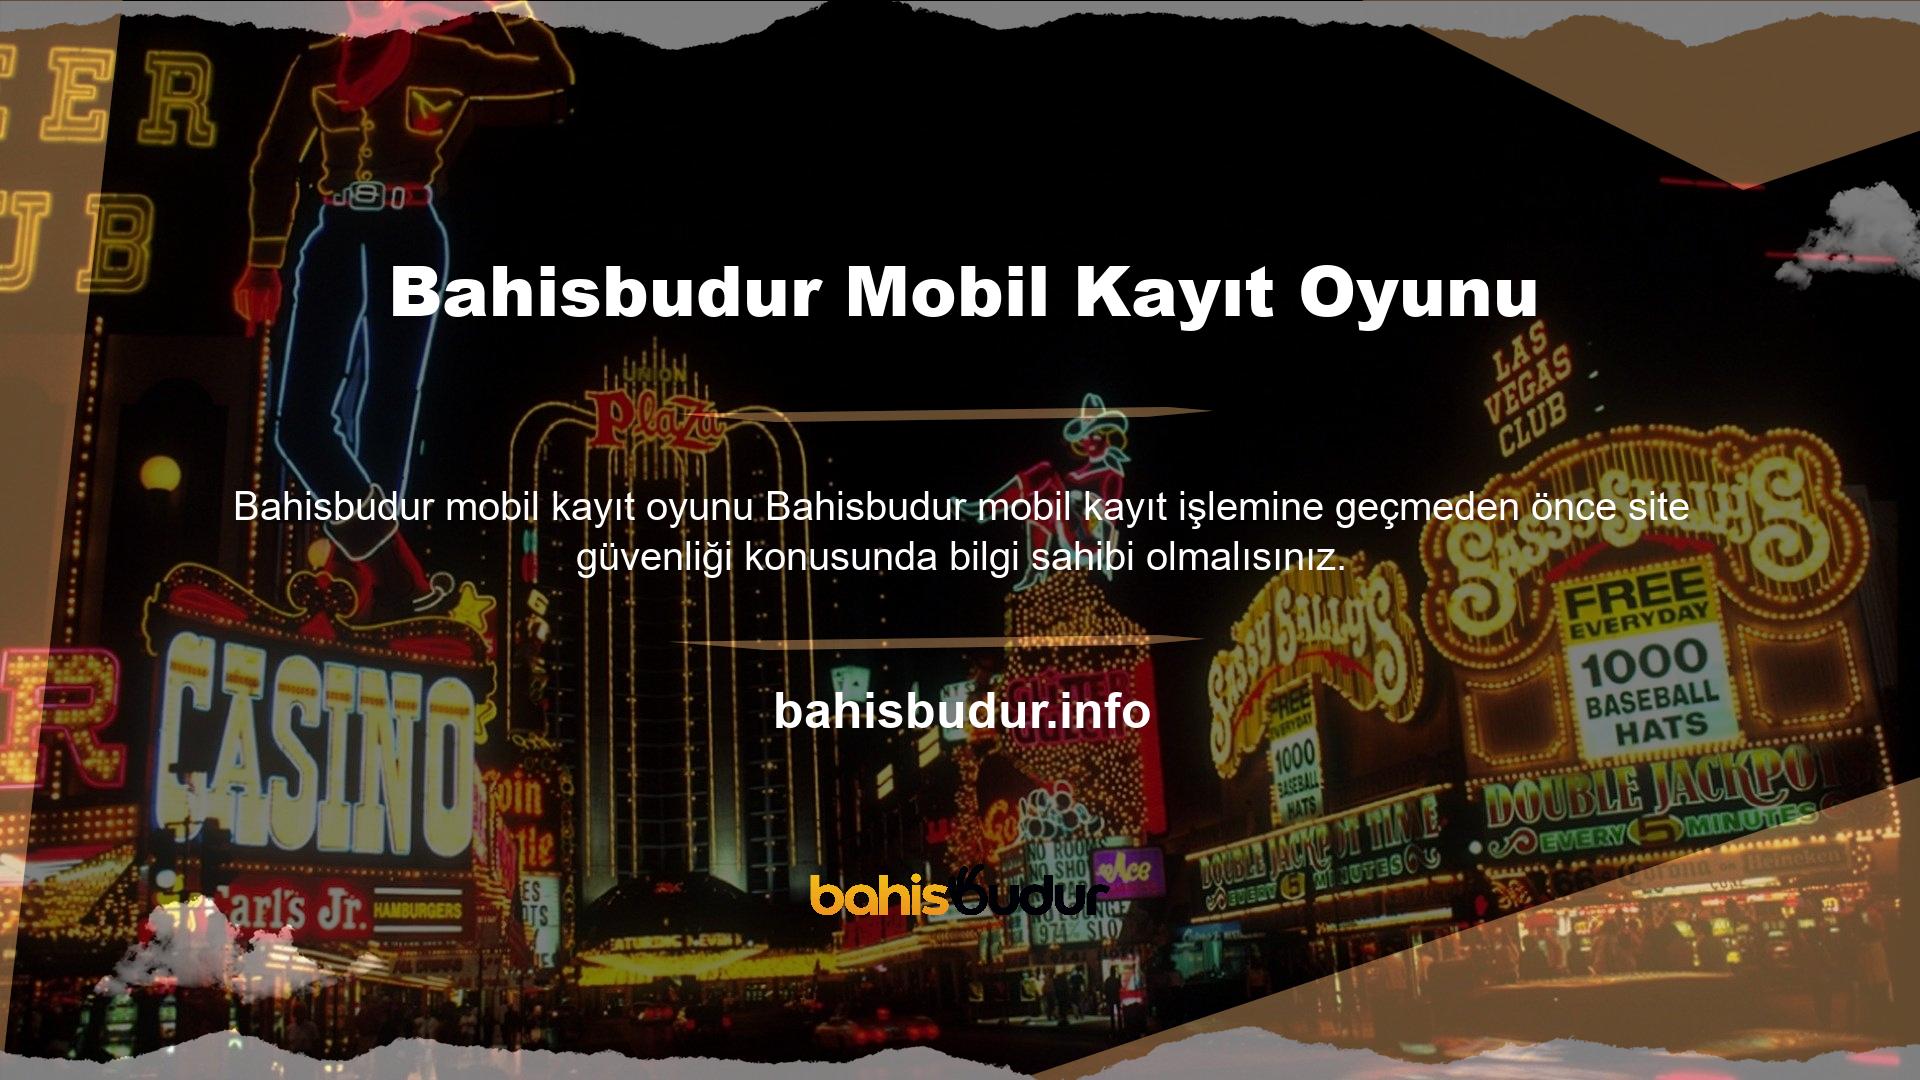 Bahisbudur mobil kayıt oyunları web sitesini açık bırakmak yerine, her giriş yaptığınızda siteye güvenli bir şekilde erişebileceğinizden emin olabilirsiniz